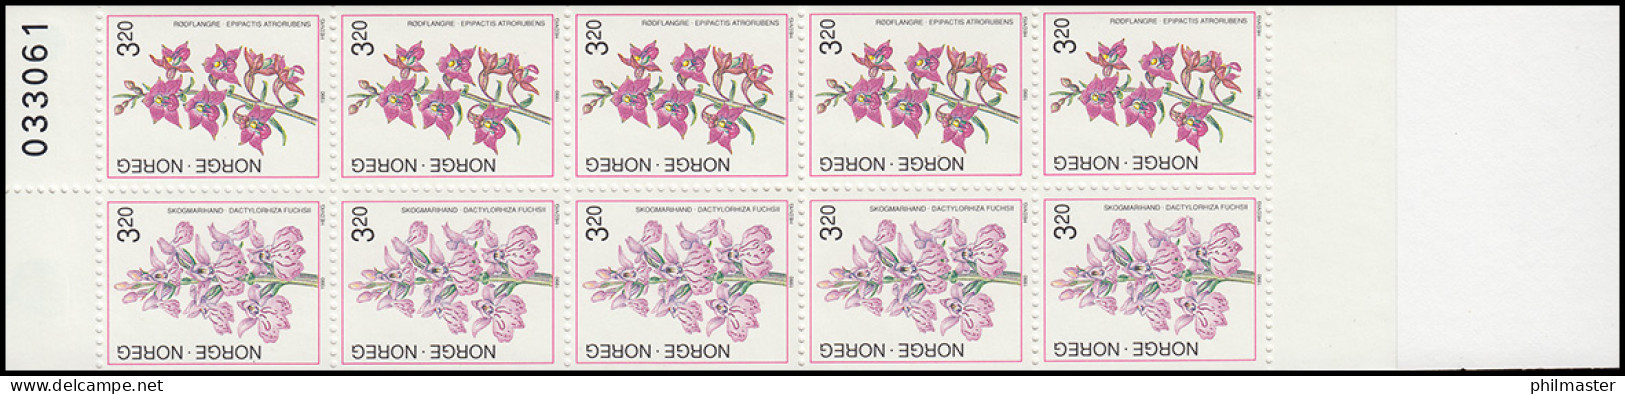 Norwegen Markenheftchen 15 Blumen: Orchideen 1990, ** Postfrisch - Markenheftchen